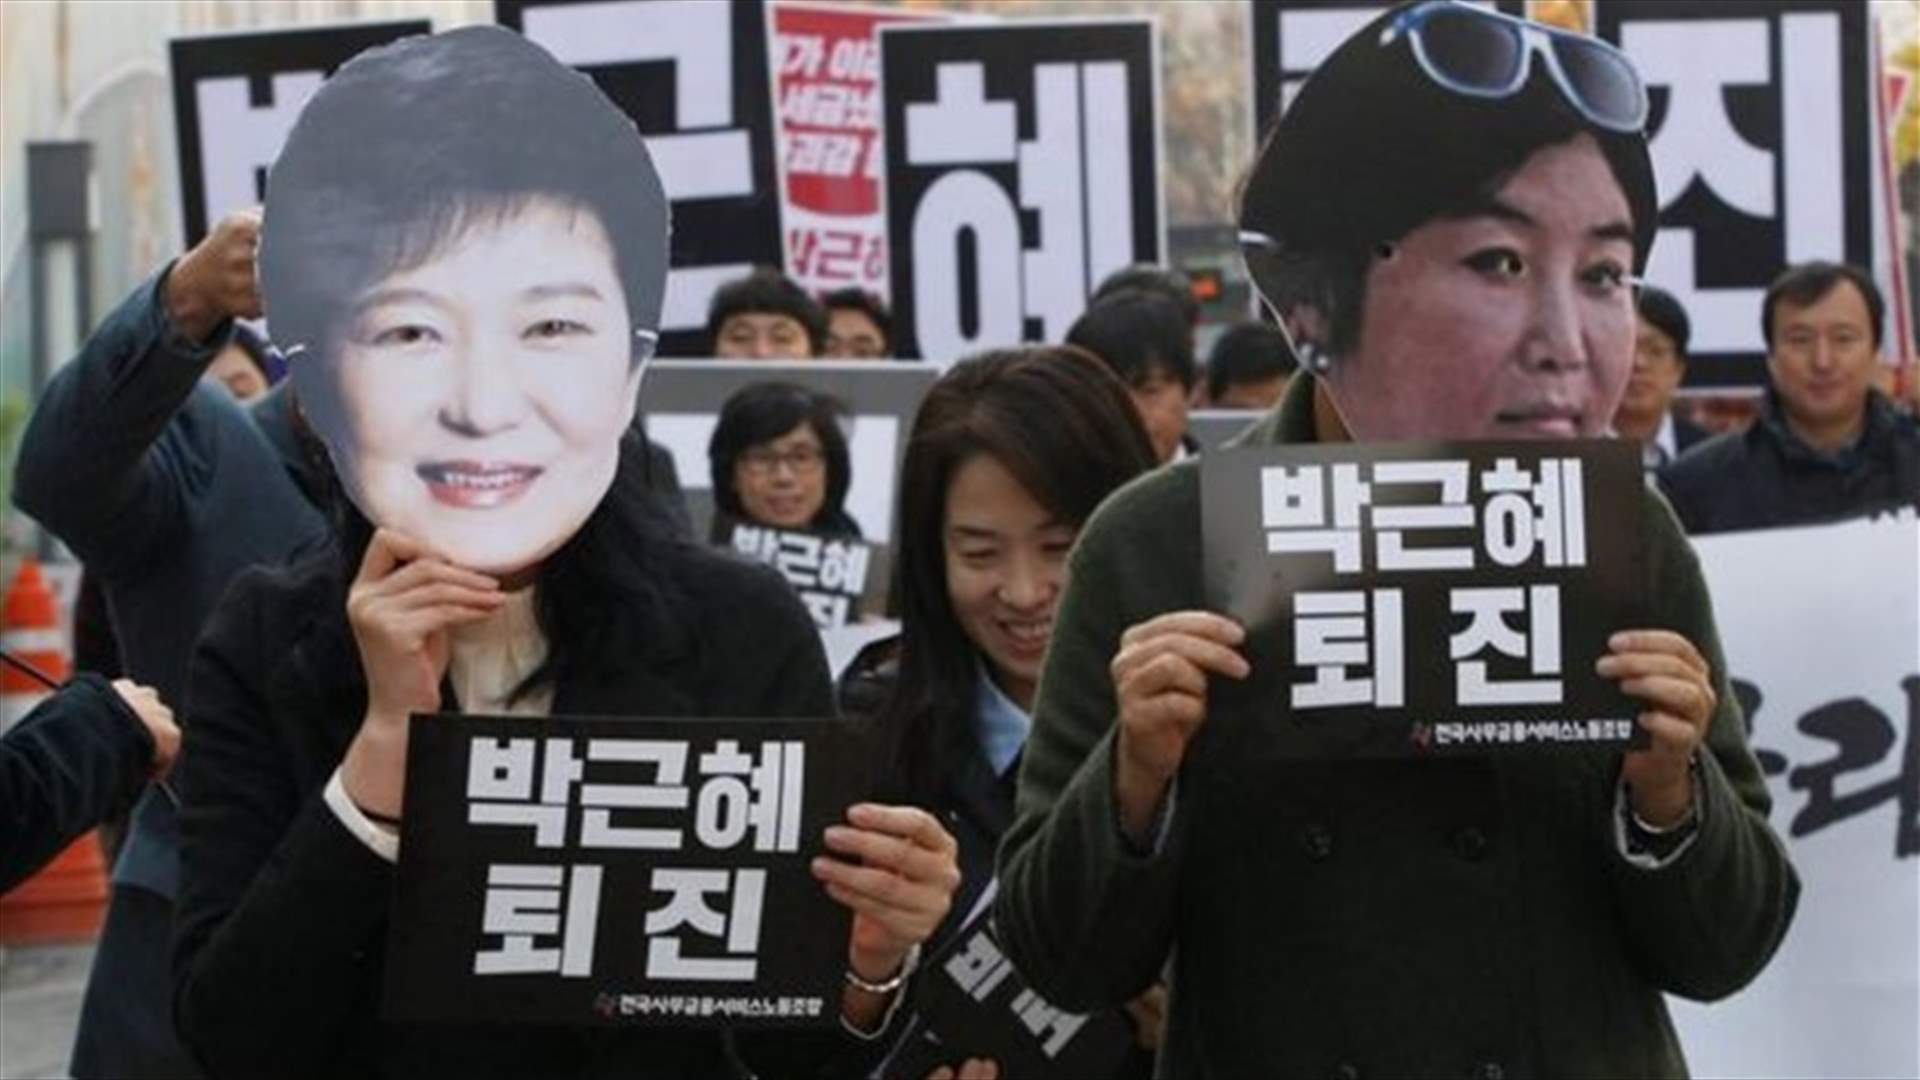 تظاهرة كبيرة في سيول للمطالبة باقالة رئيسة كوريا الجنوبية